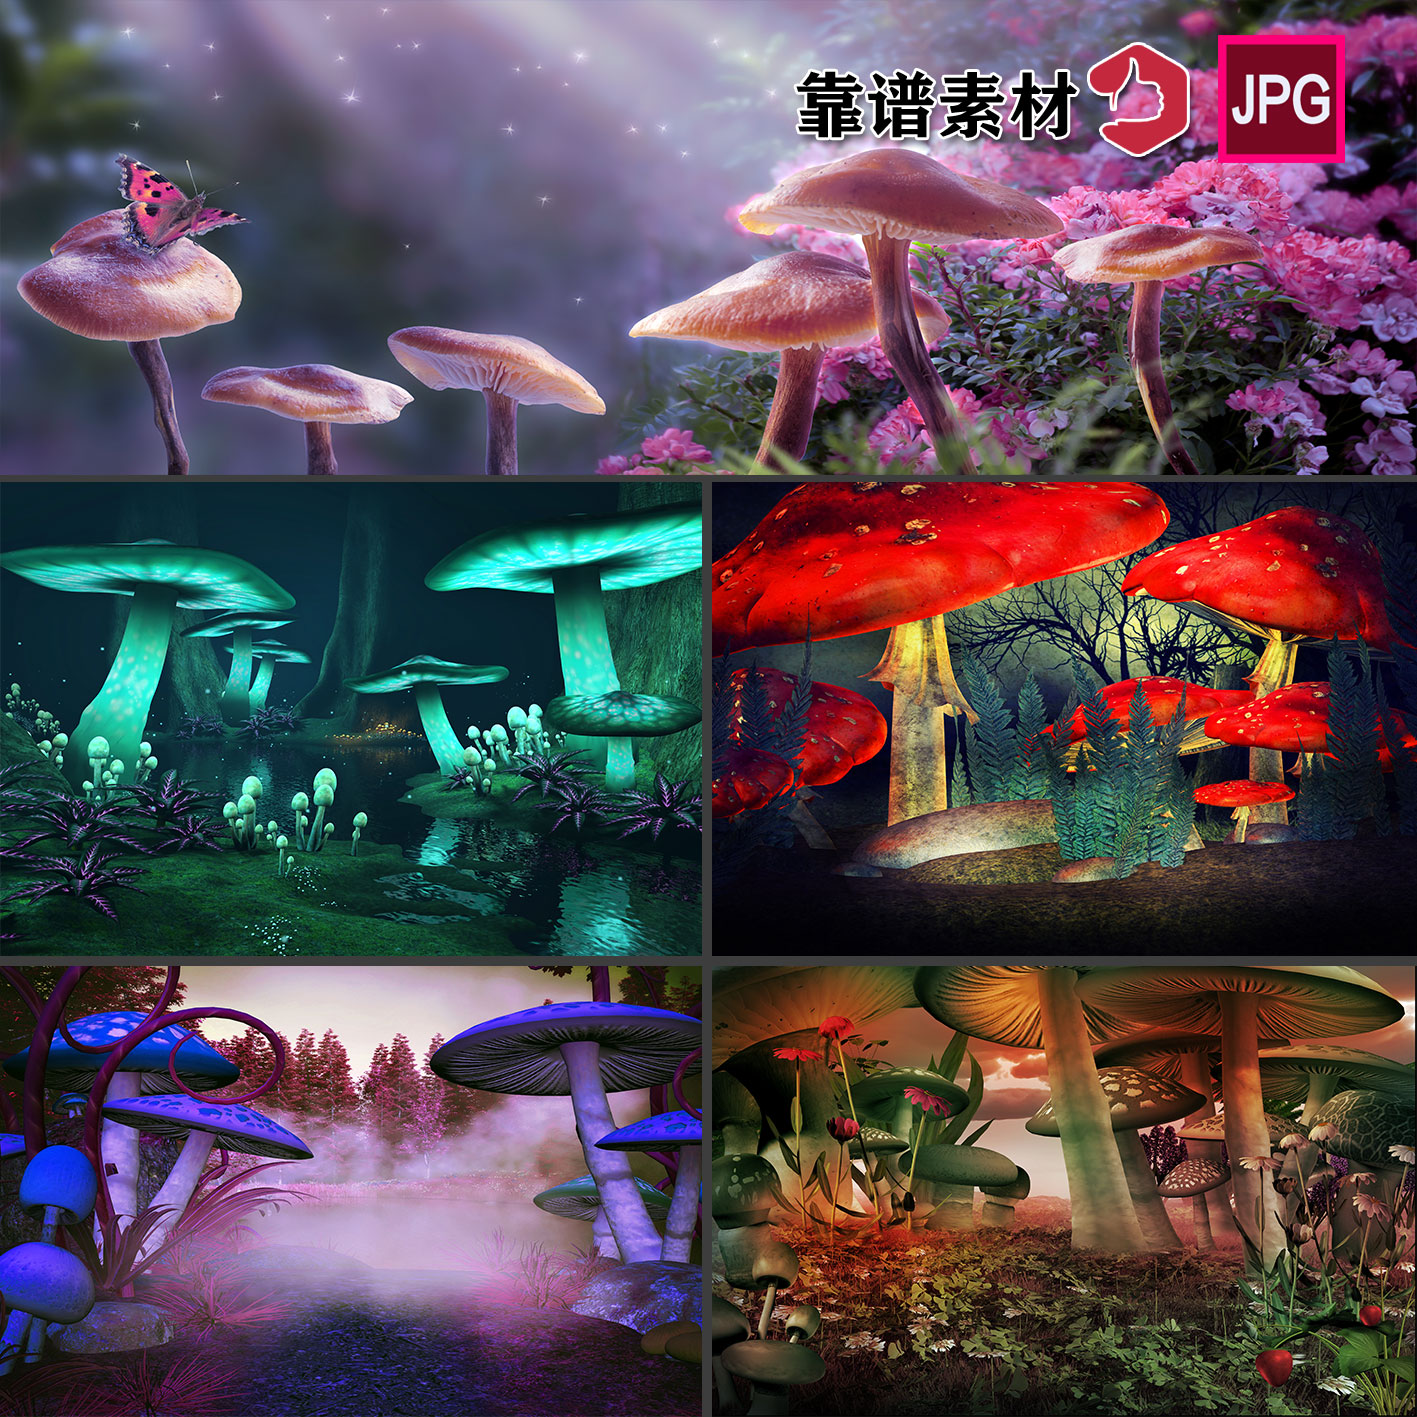 手绘插画蘑菇城堡魔幻仙境风景画舞台背景图片设计素材